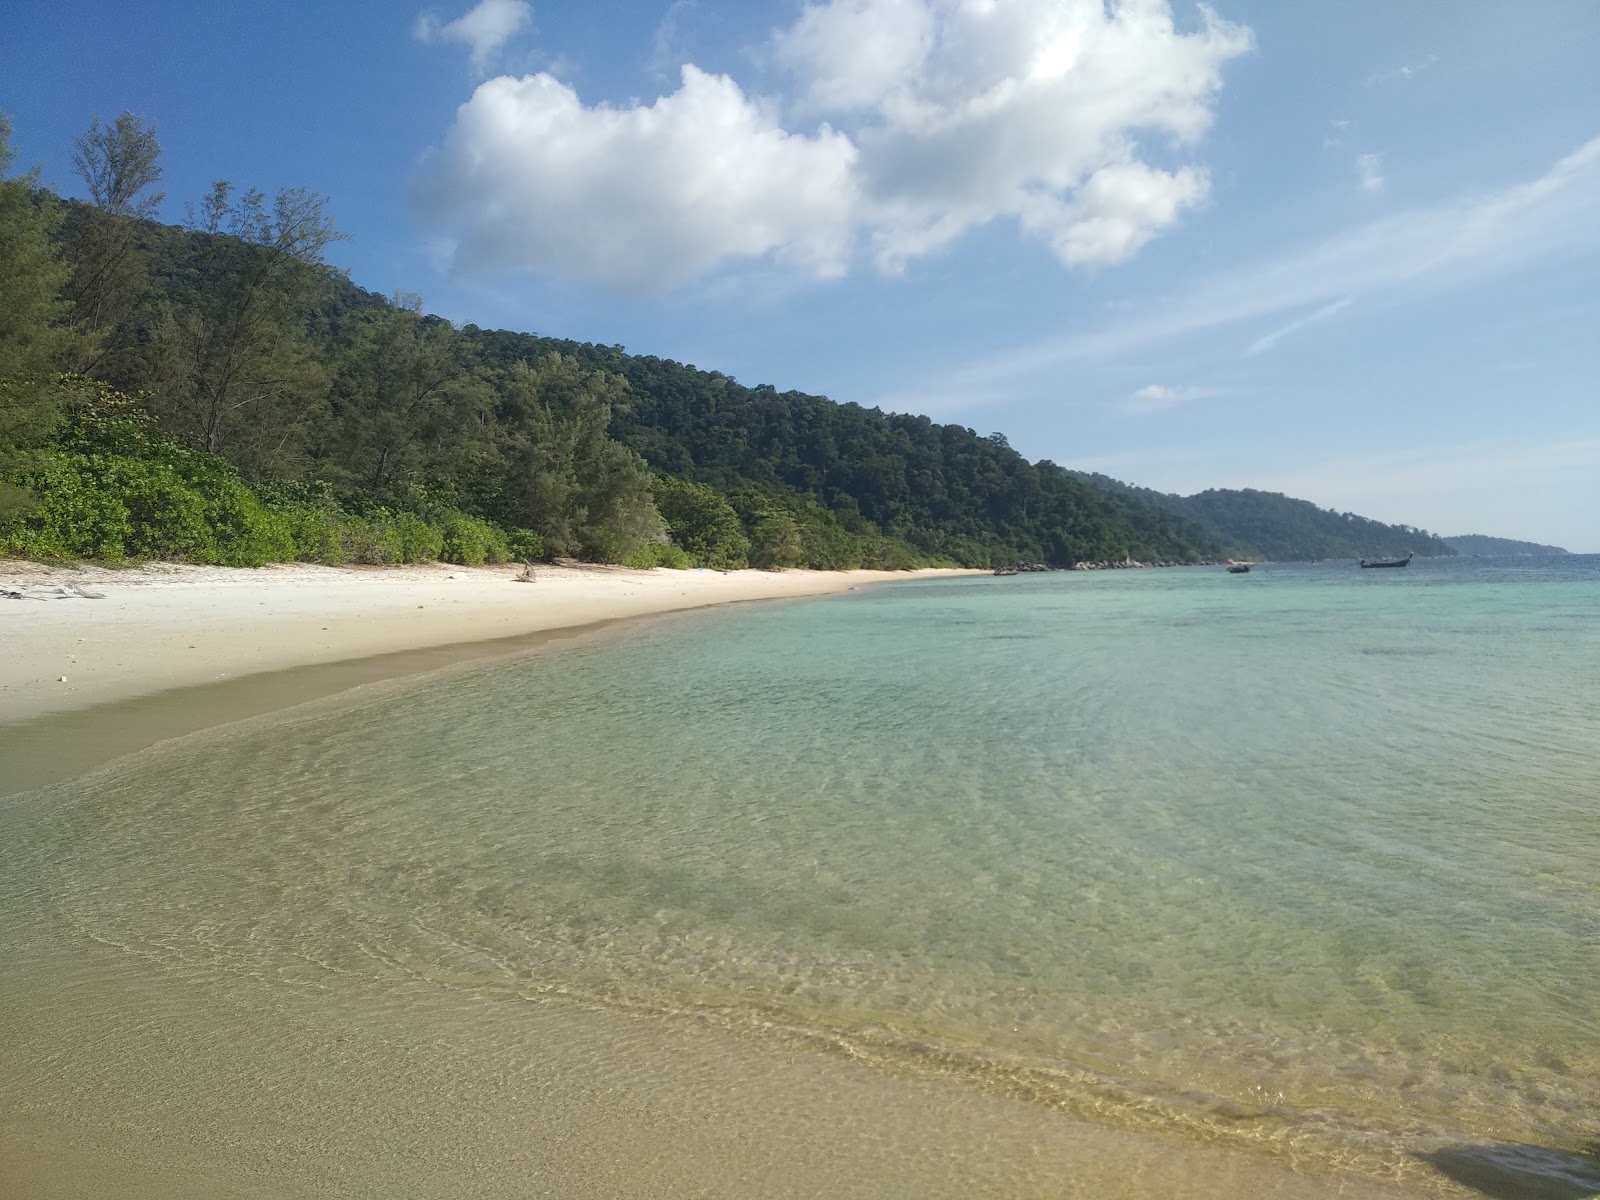 Koh Adang Gizli Plajı III'in fotoğrafı plaj tatil beldesi alanı